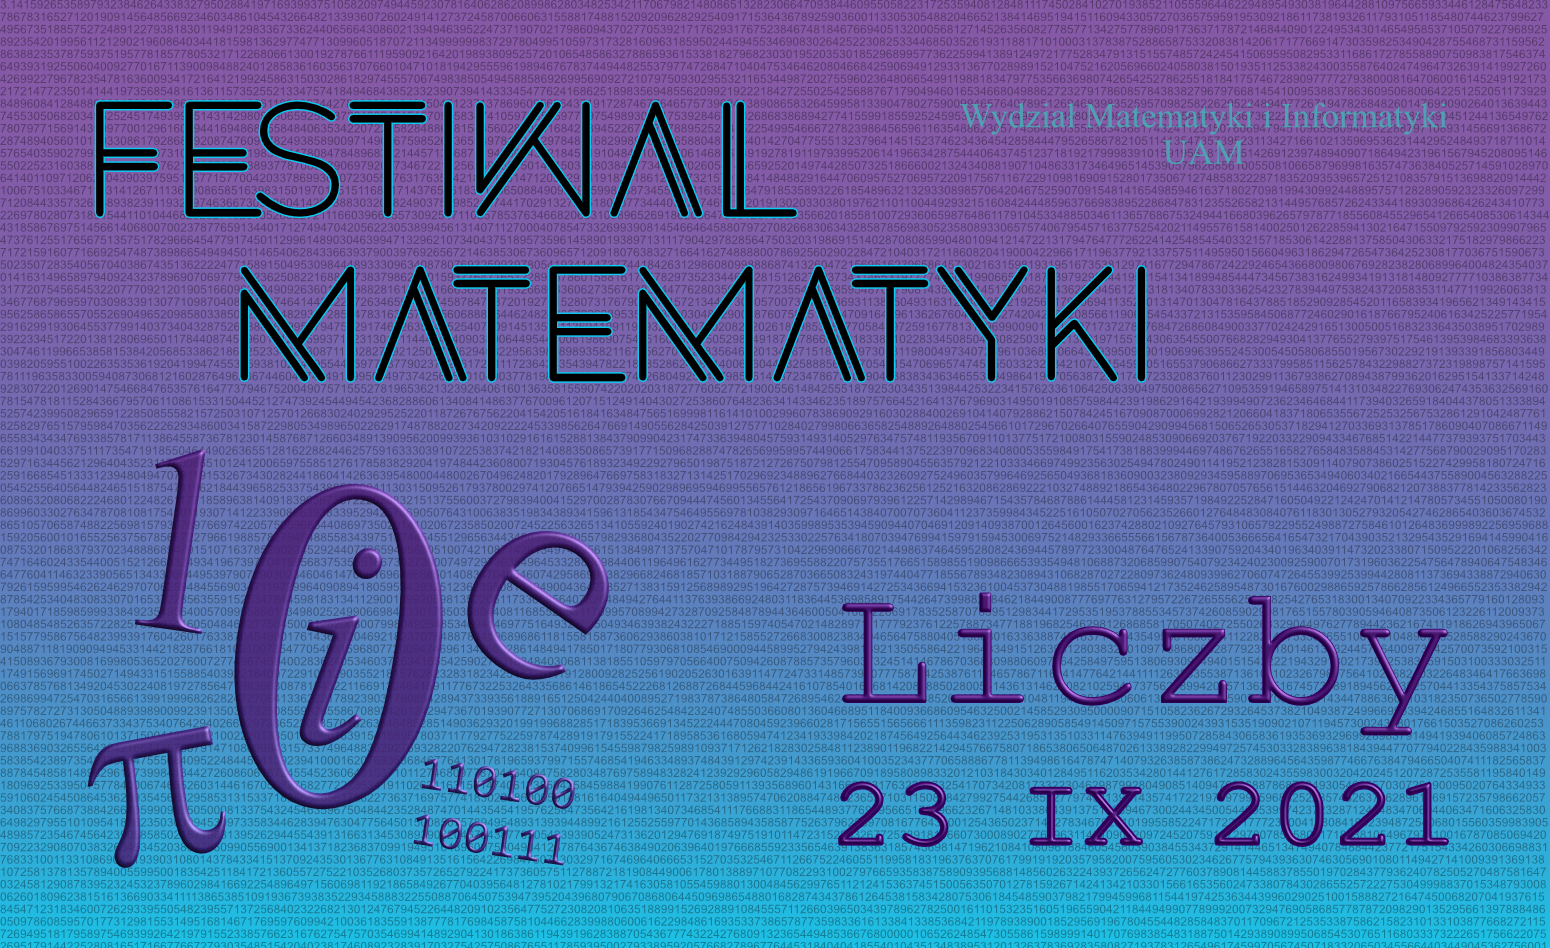 Plakat o festwialu matematyki, znajdują się na nim liczby, symbole oraz data wydarzenia 23 IX 2021.